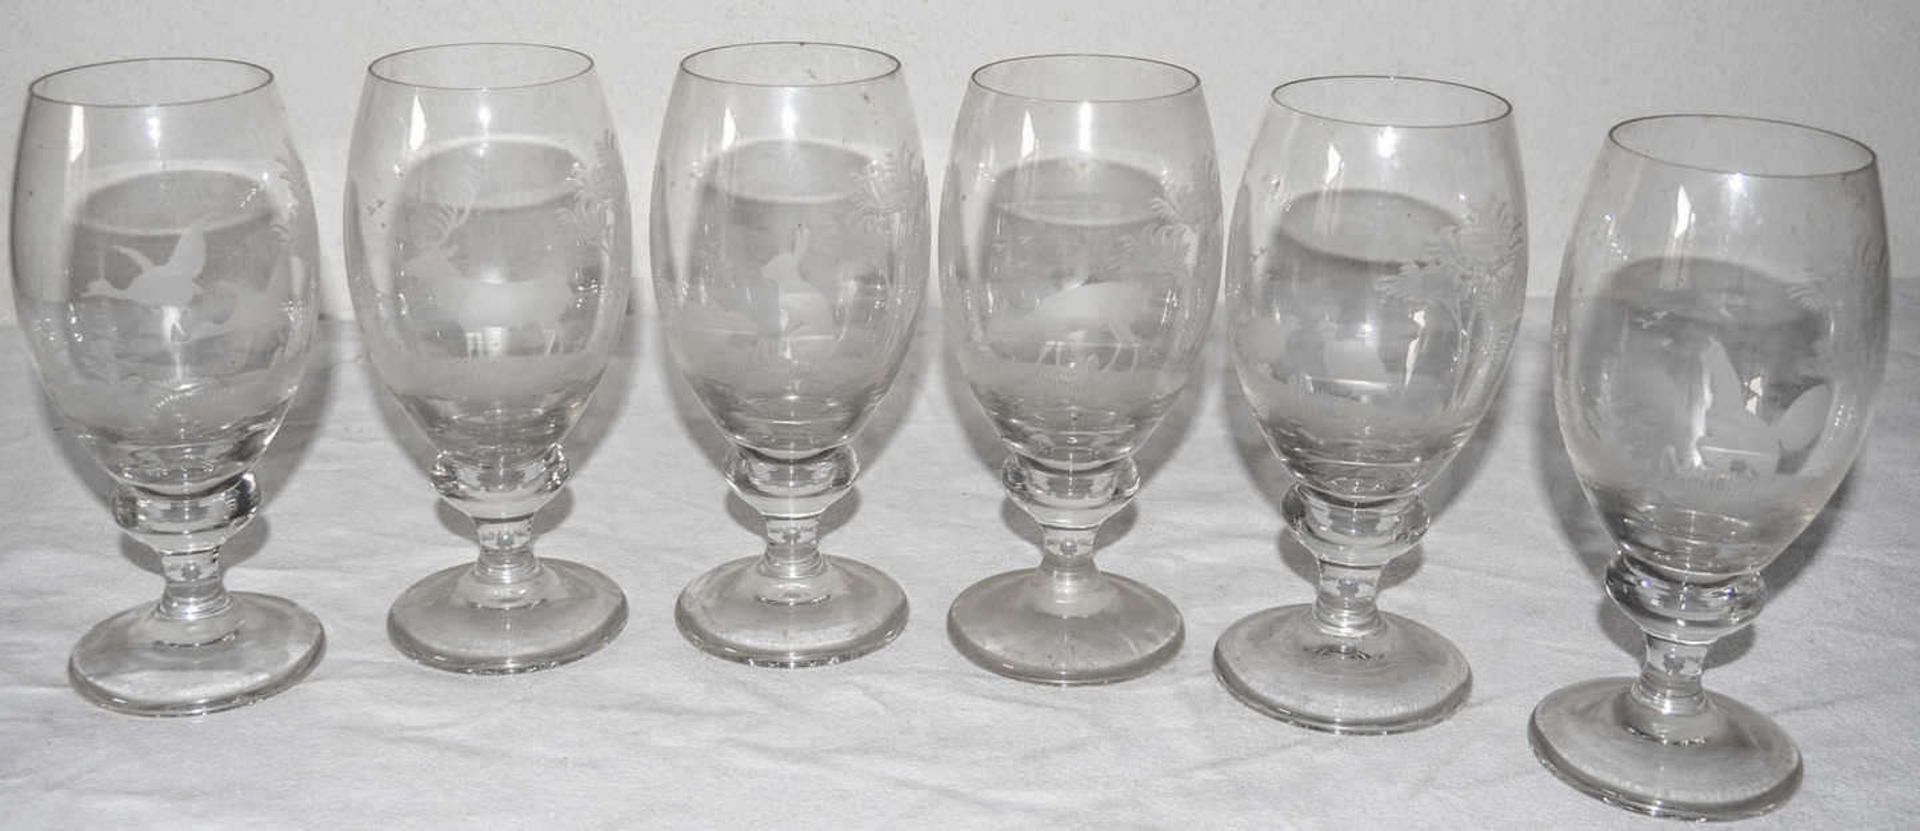 6 Biergläsern mit waidmännischen Motiven. Bayerischer Wald. Höhe: ca. 18 cm. 6 beer glasses with